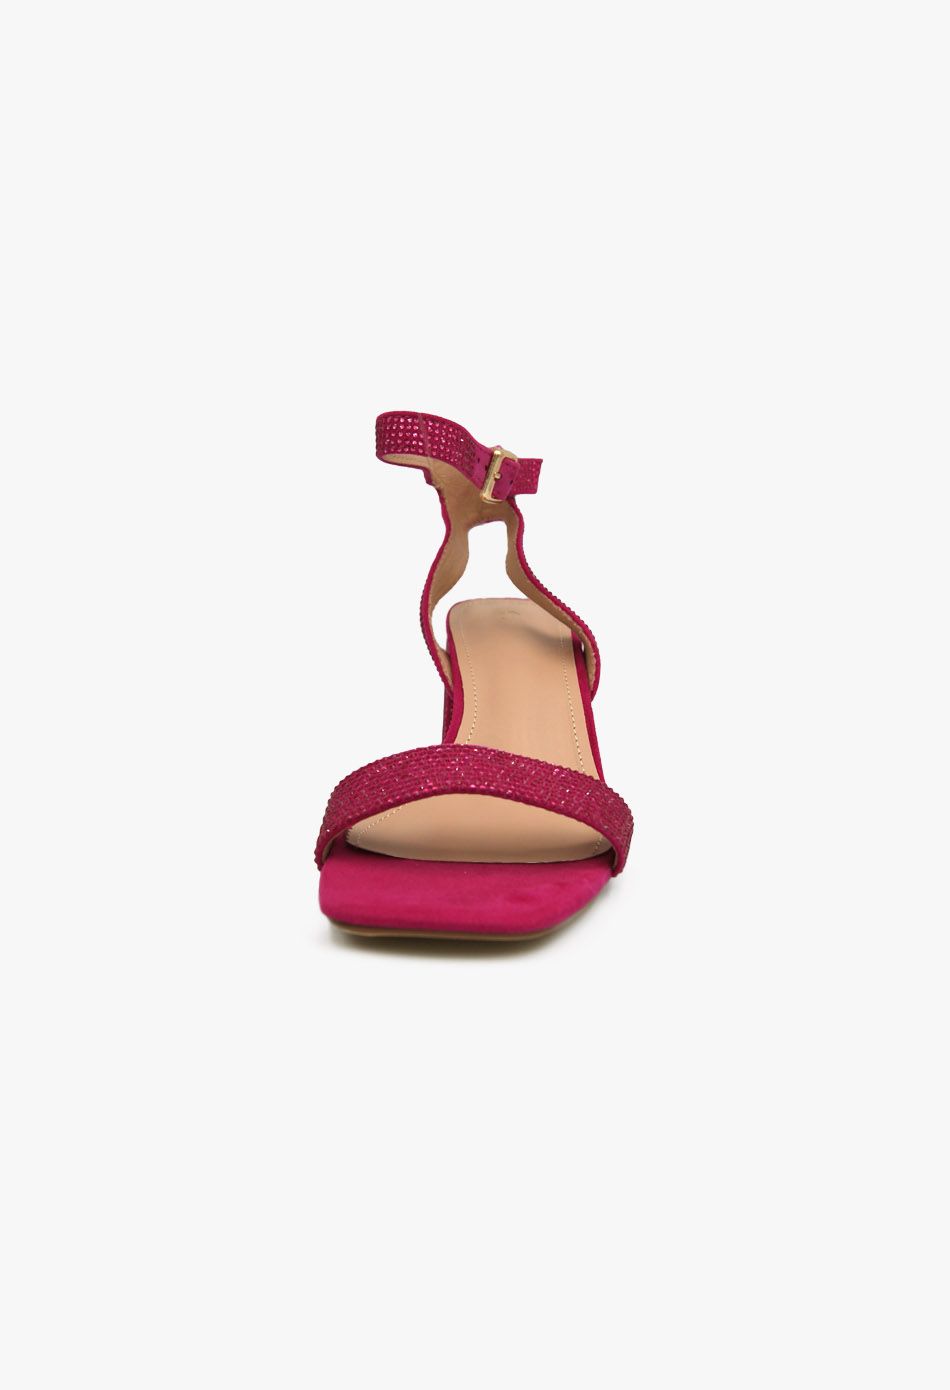 Γυναικεία Πέδιλα με Στρασ και Χοντρό Χαμηλό Τακούνι Φούξια / F1606-rose Ανοιχτά Παπούτσια joya.gr